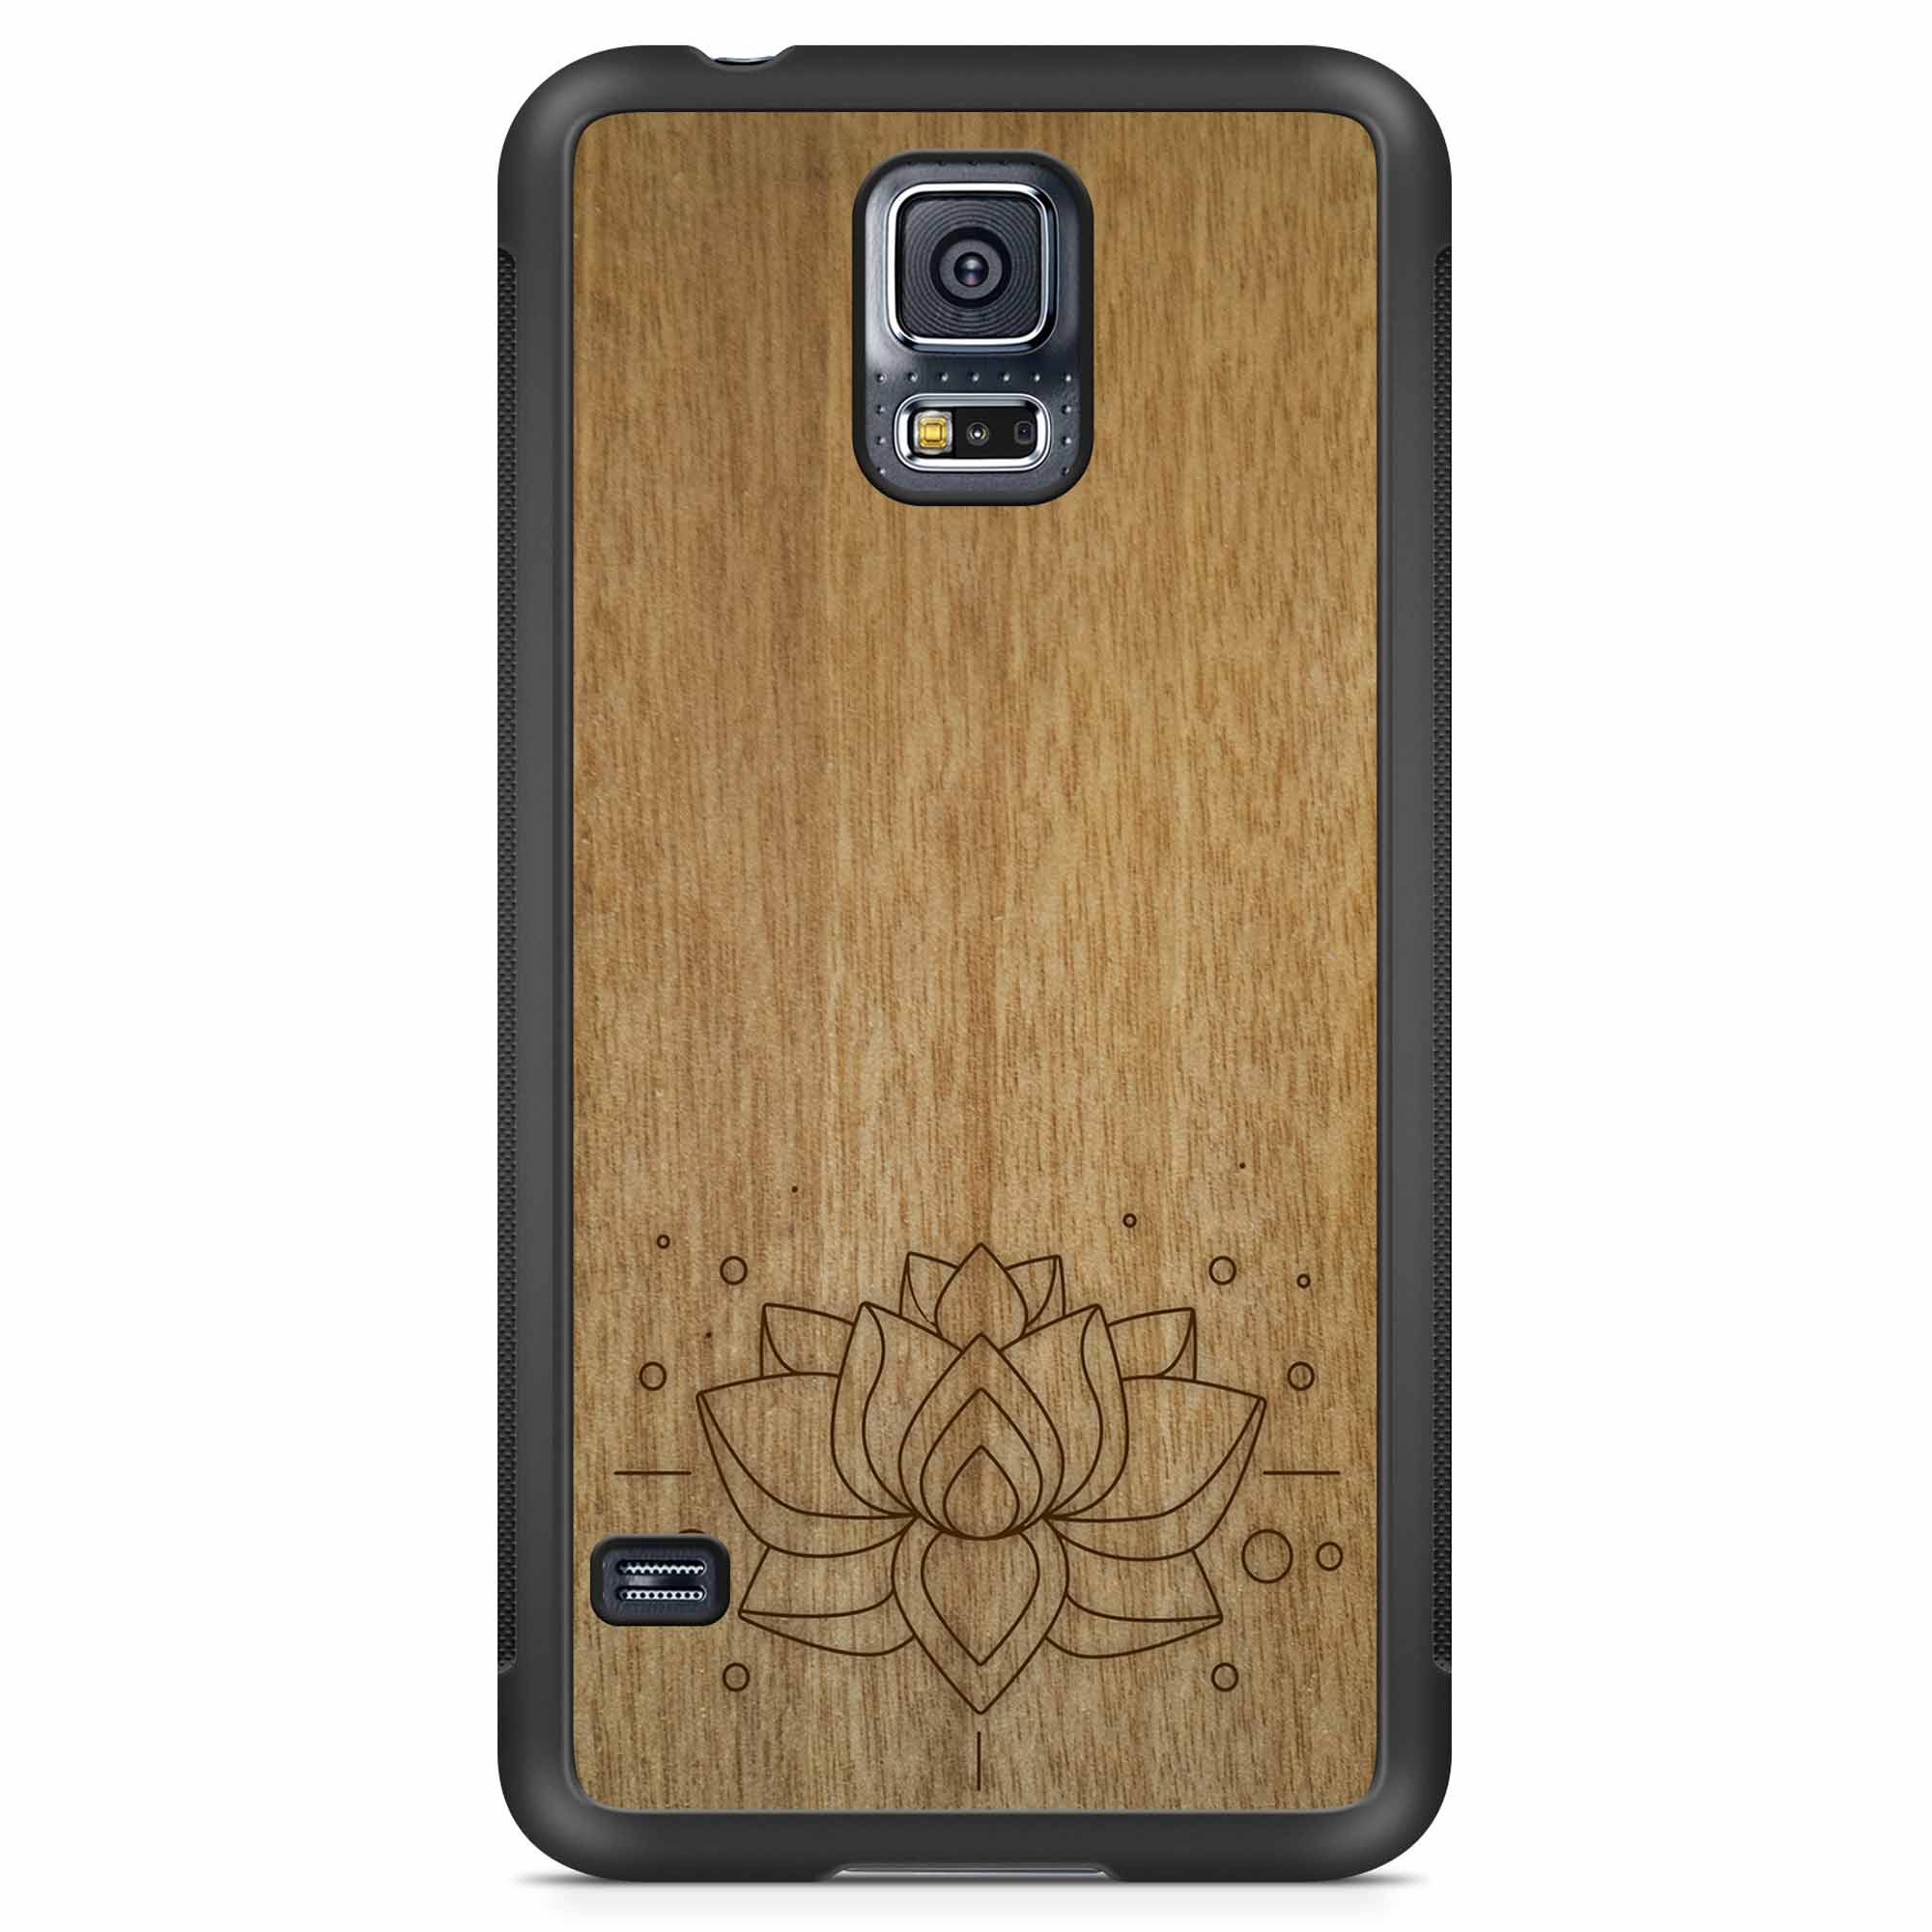 Carcasa de madera para teléfono con grabado Lotus Samsung S5